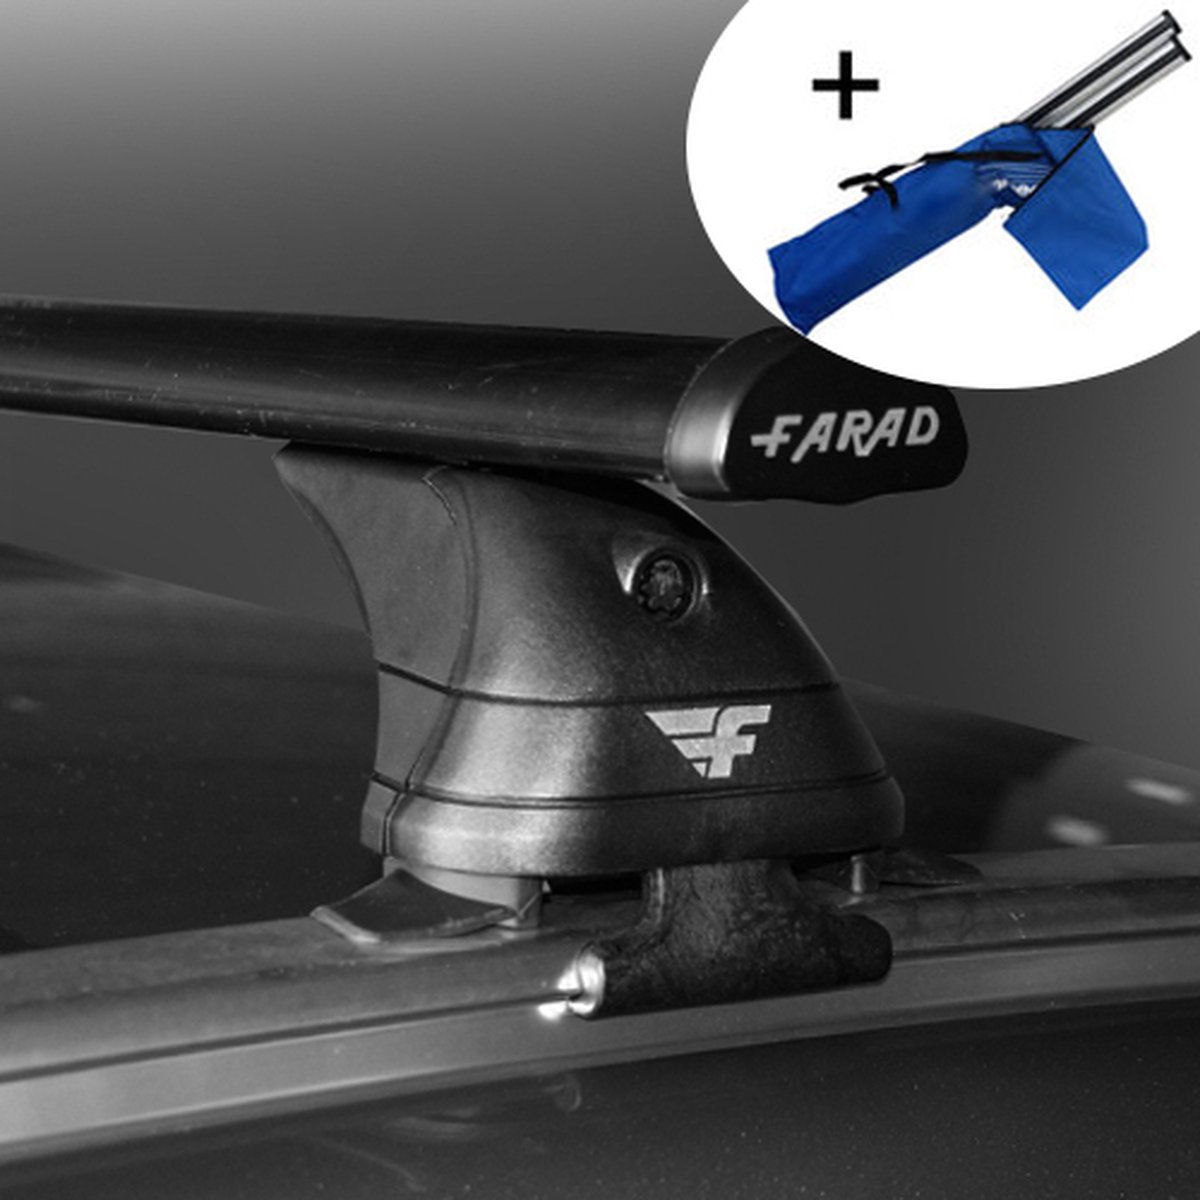 Dakdragers geschikt voor Fiat Panda 5 deurs hatchback vanaf 2012 - Staal - inclusief dakdrager opbergtas